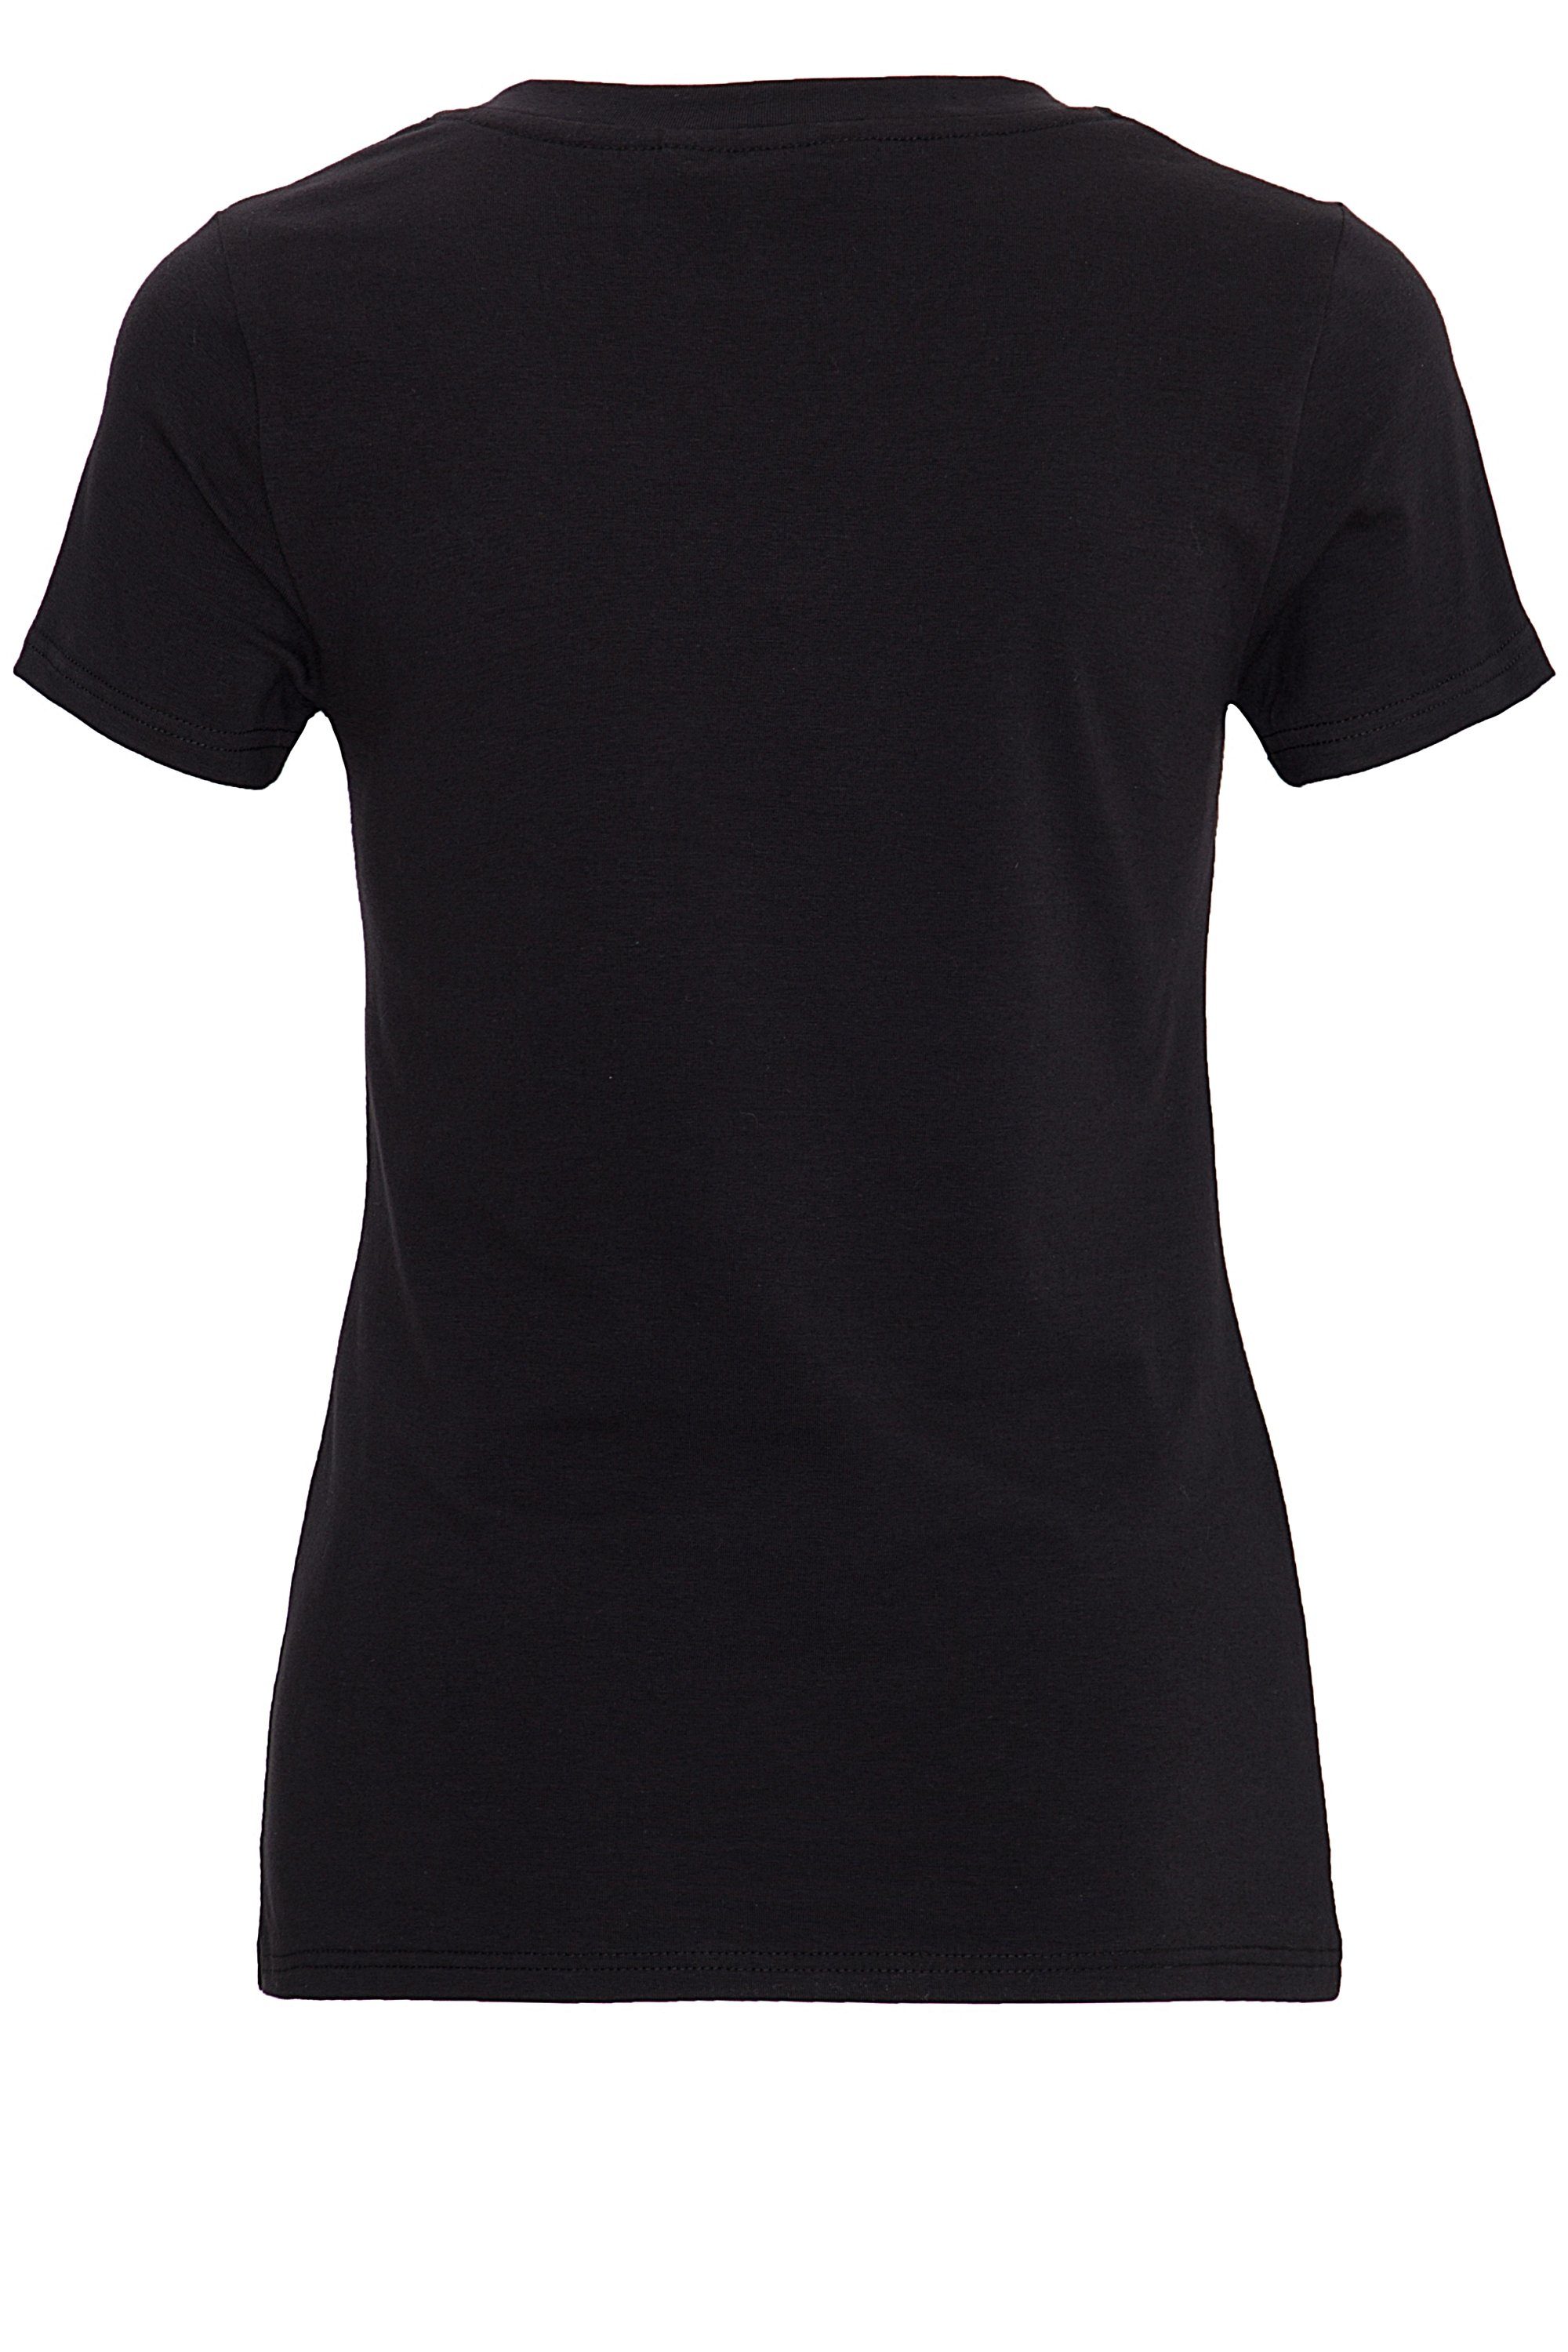 T-Shirt Oowwwoooo schwarz V-Ausschnitt Frontprint und QueenKerosin mit